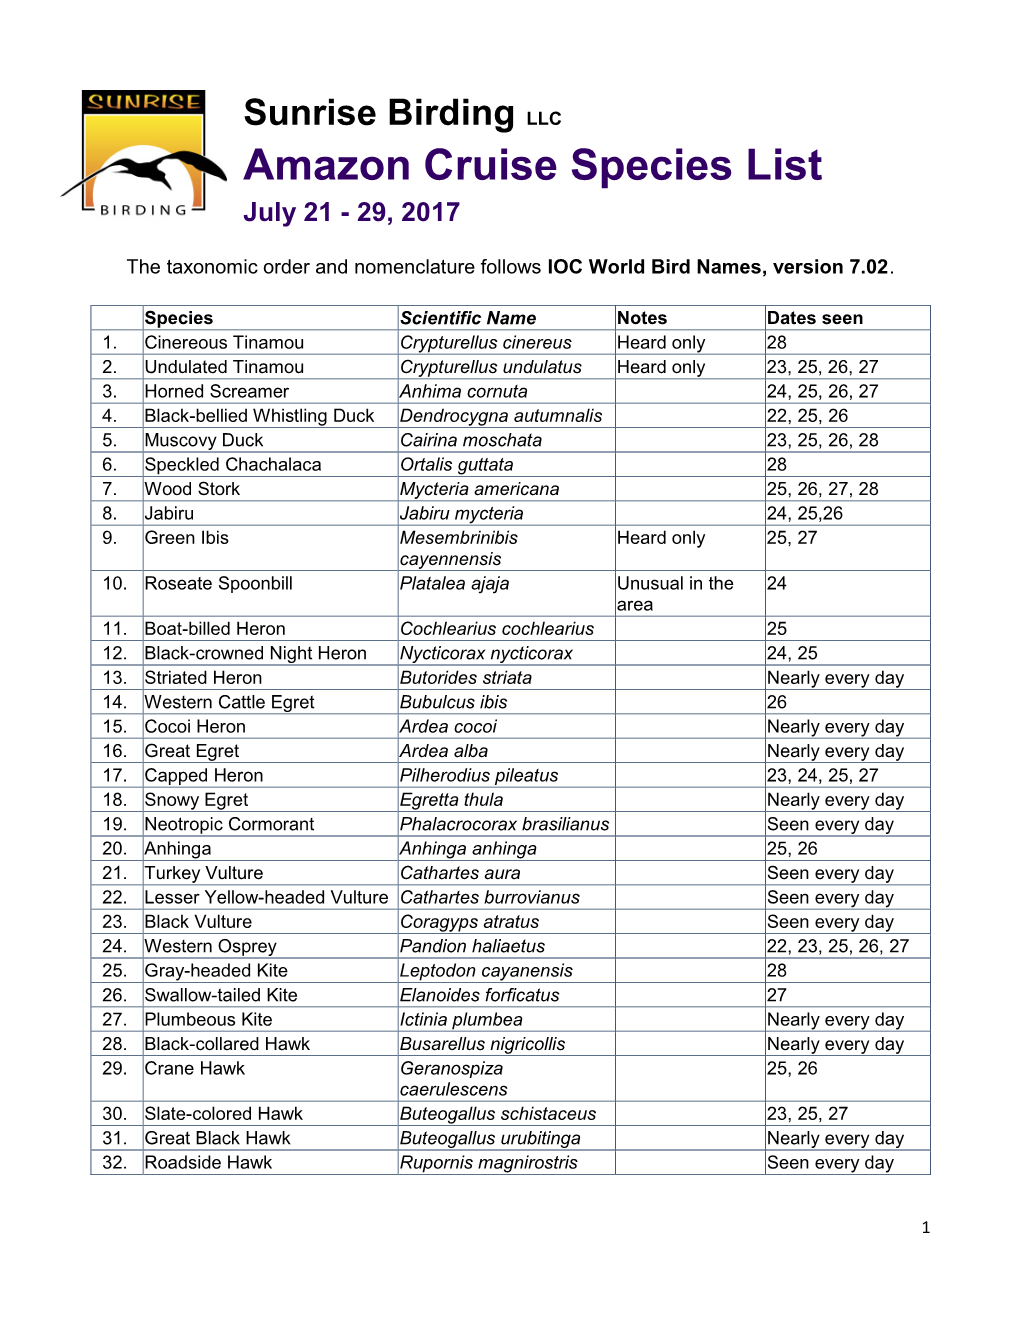 Amazon Cruise Species List